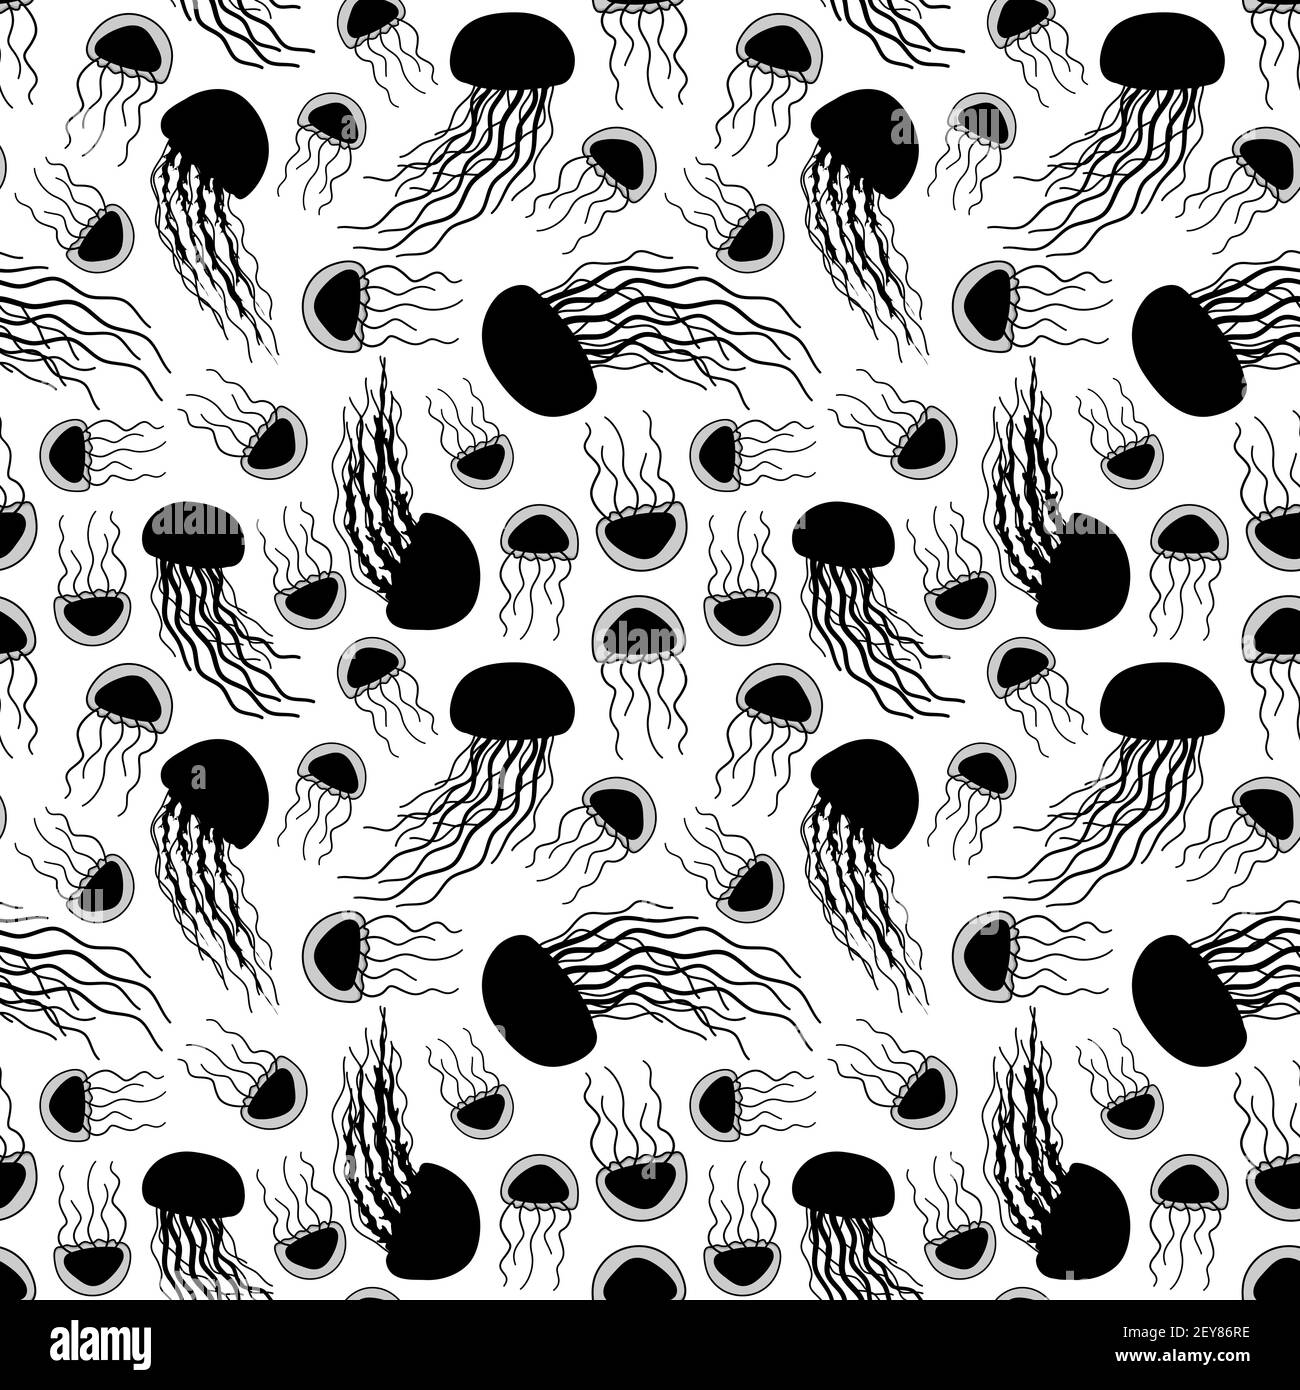 Blanc noir sans couture répétition sans fin silhouette motif de dessin animé Doodle vector Jellyfish. La gelée de mer ou d'océan a de longs tentacules. Les animaux sont Illustration de Vecteur